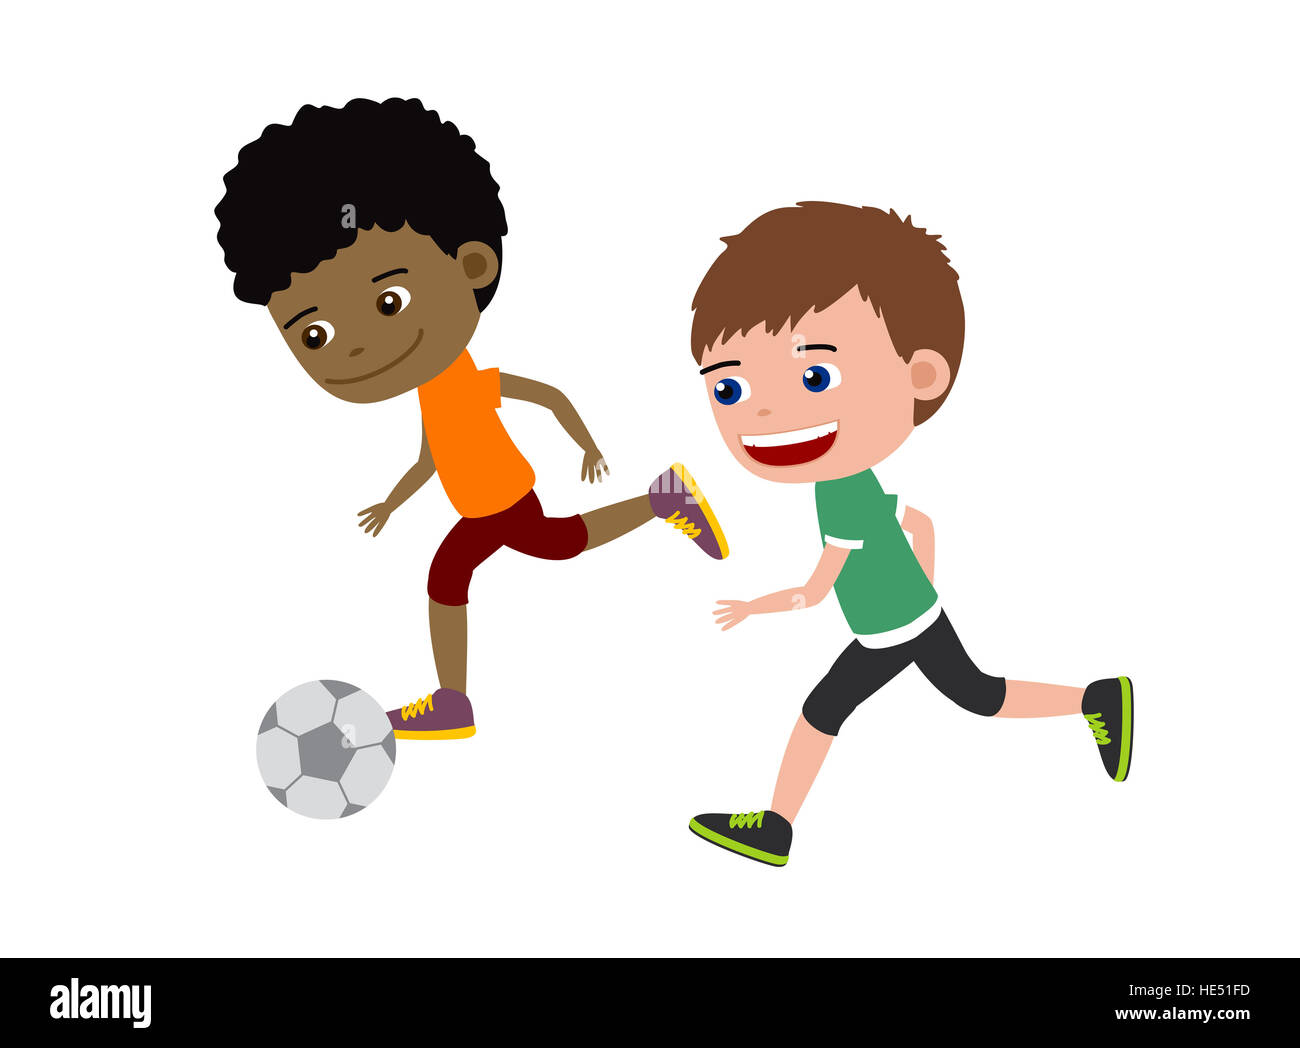 Fußball jungen. Cartoon-Illustration von zwei Kinder Fußball spielen. Stockfoto